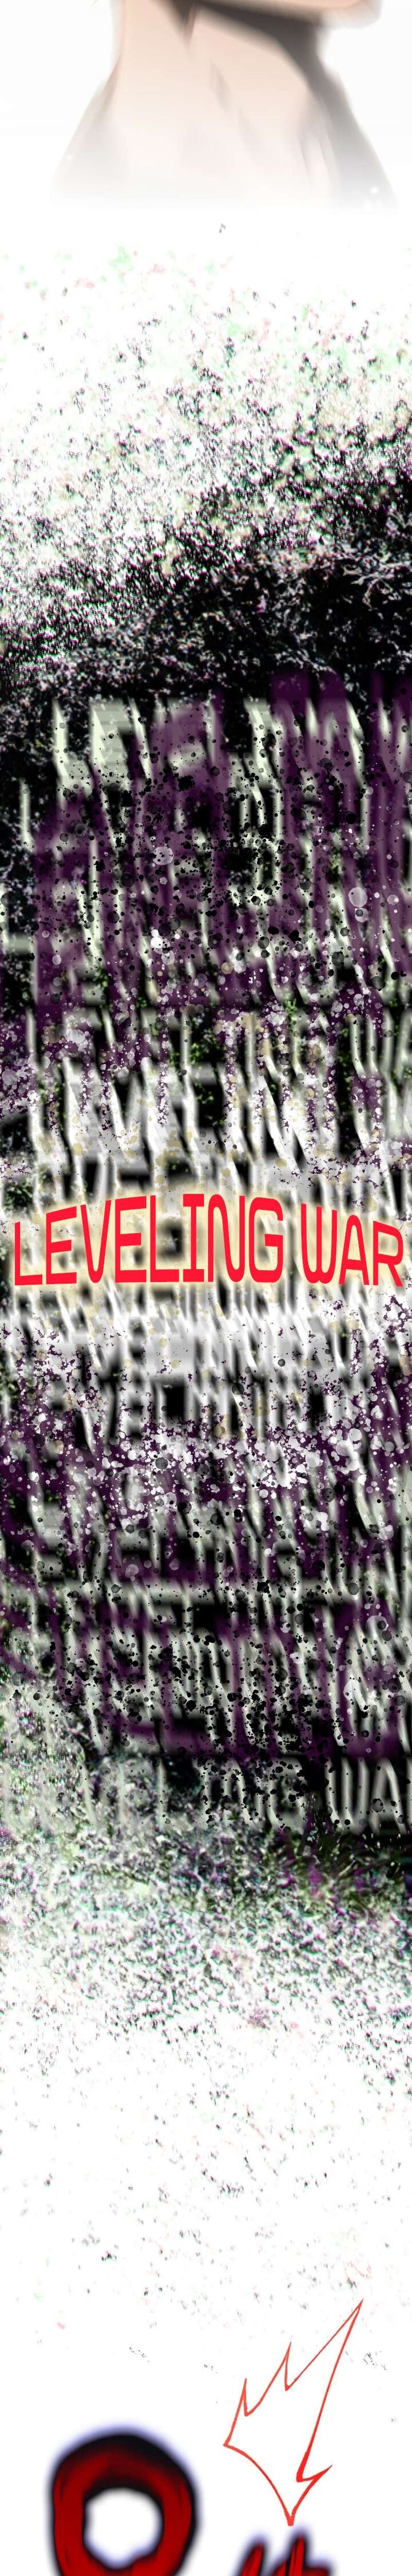 Hardcore Leveling Warrior 319 12